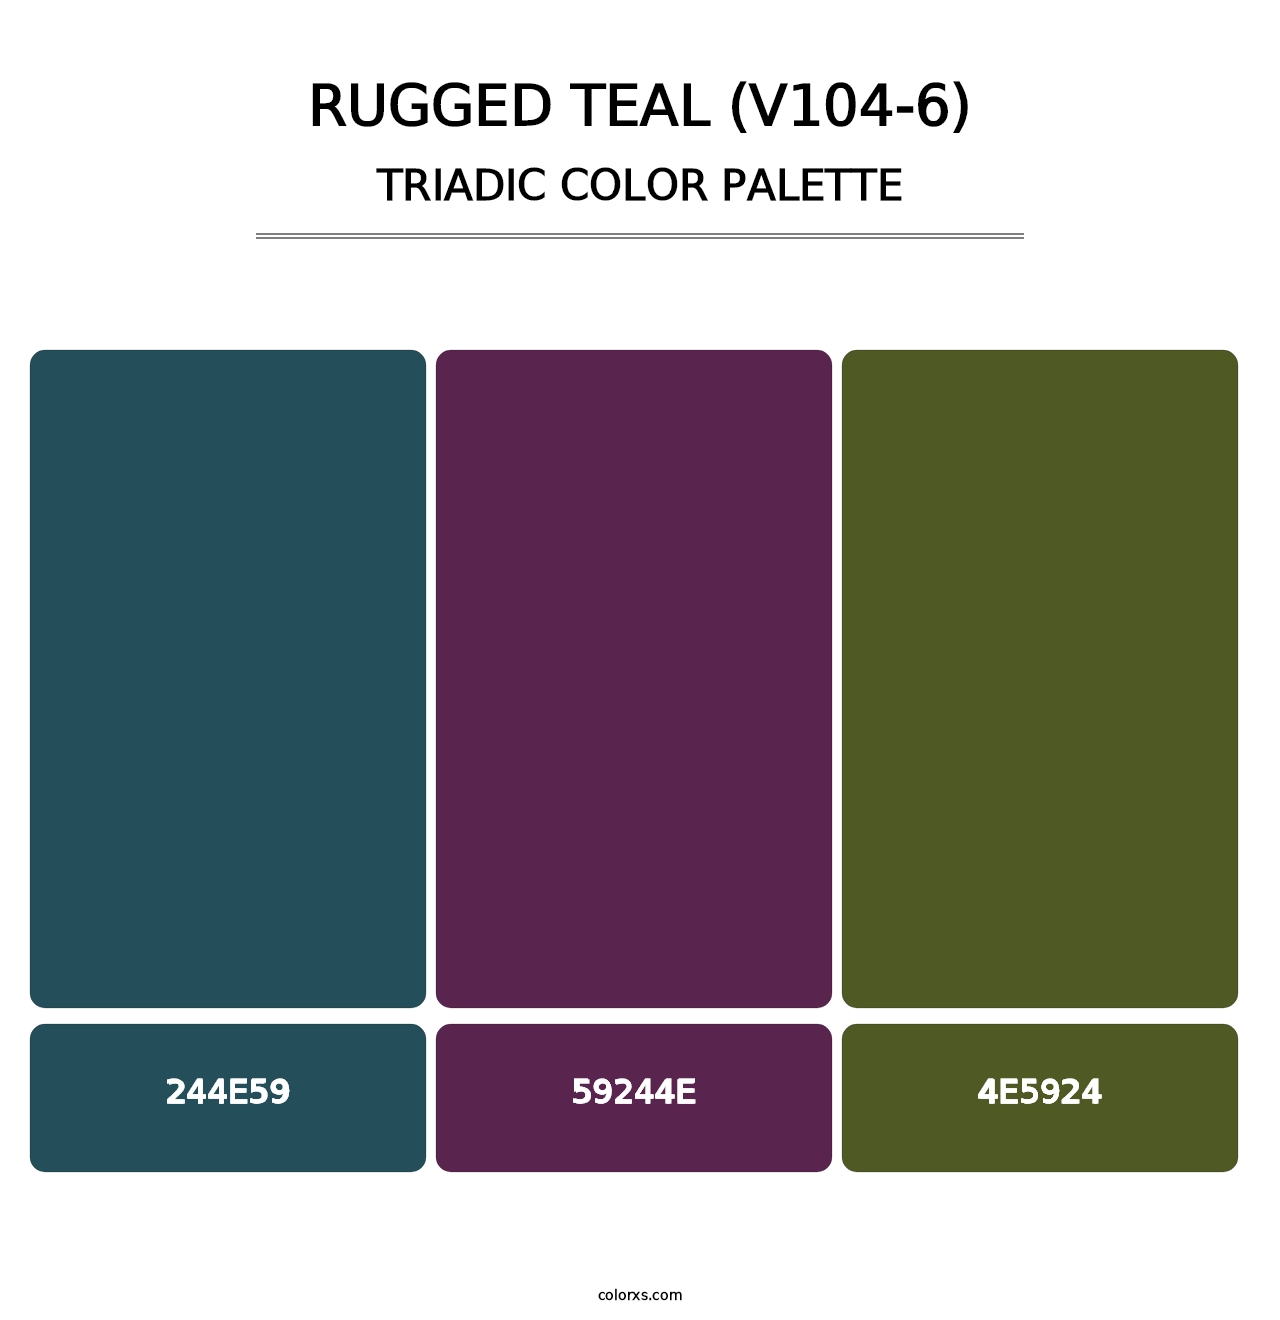 Rugged Teal (V104-6) - Triadic Color Palette